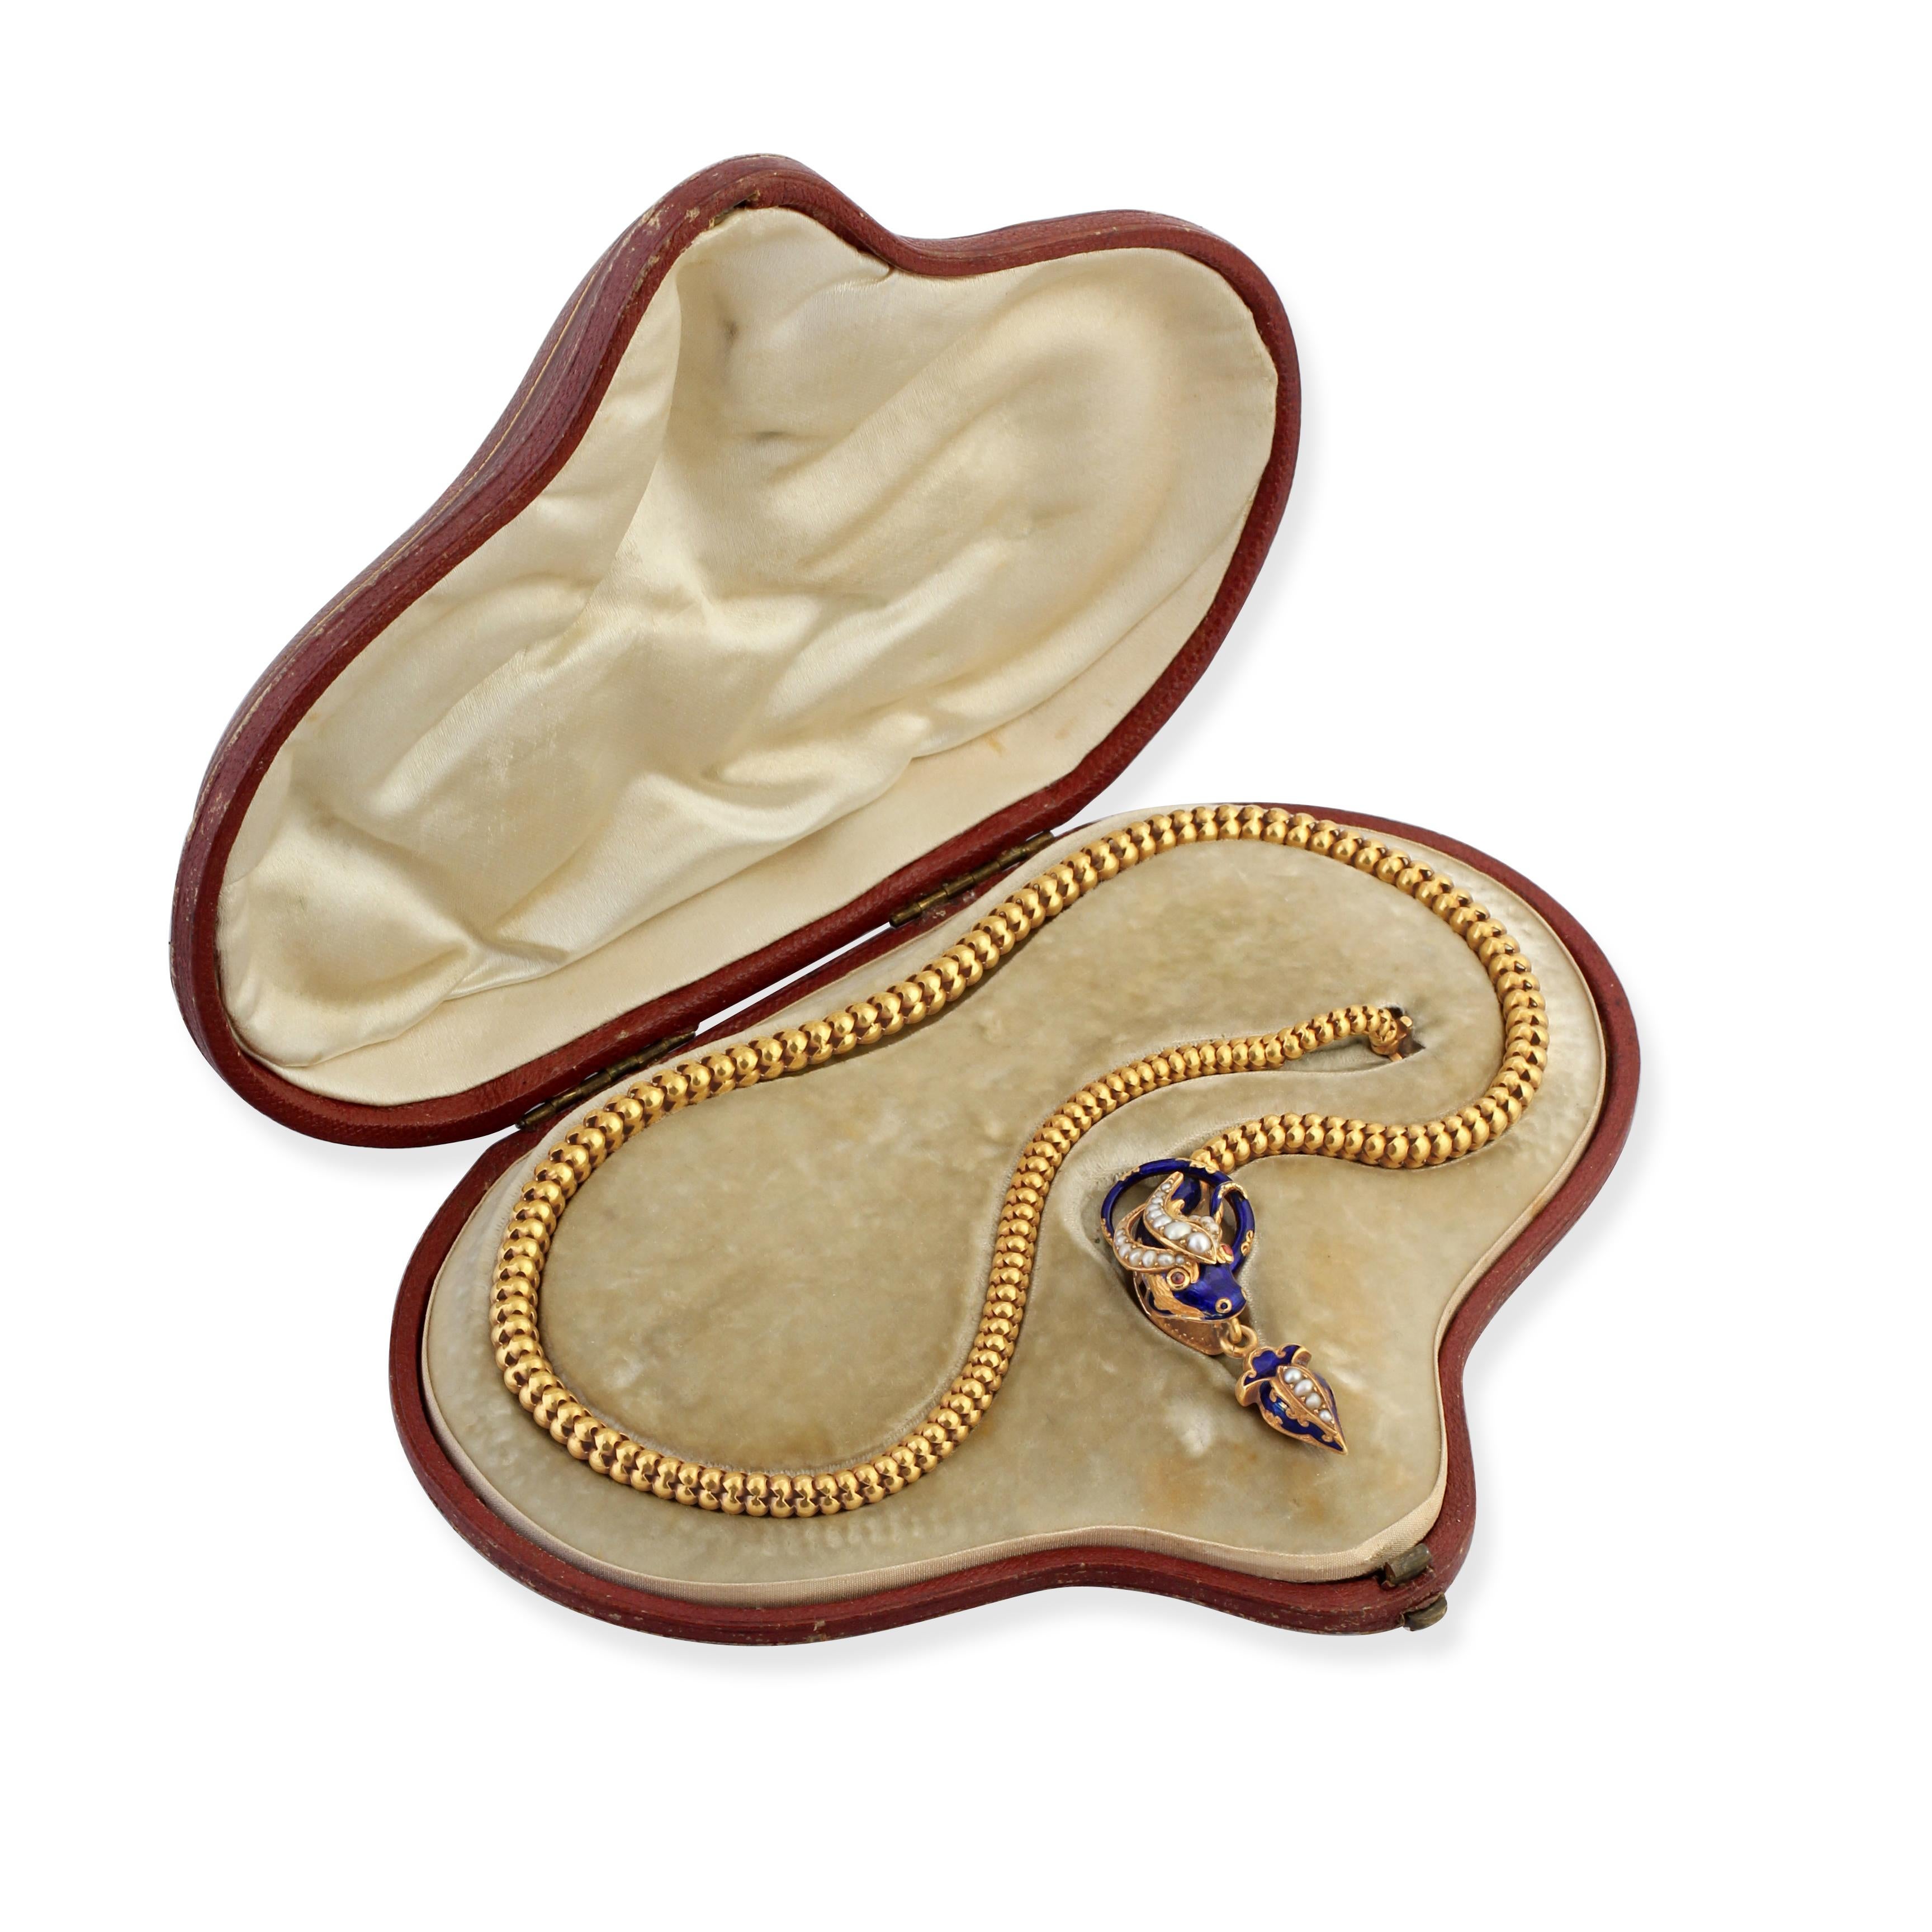 Eine Schlangenkette aus Gold und Emaille aus der Mitte des 19. Jahrhunderts, bestehend aus einem beweglichen Körper mit einem Kopf, der mit blauer Emaille, Perlen und Rubinen besetzt ist.
